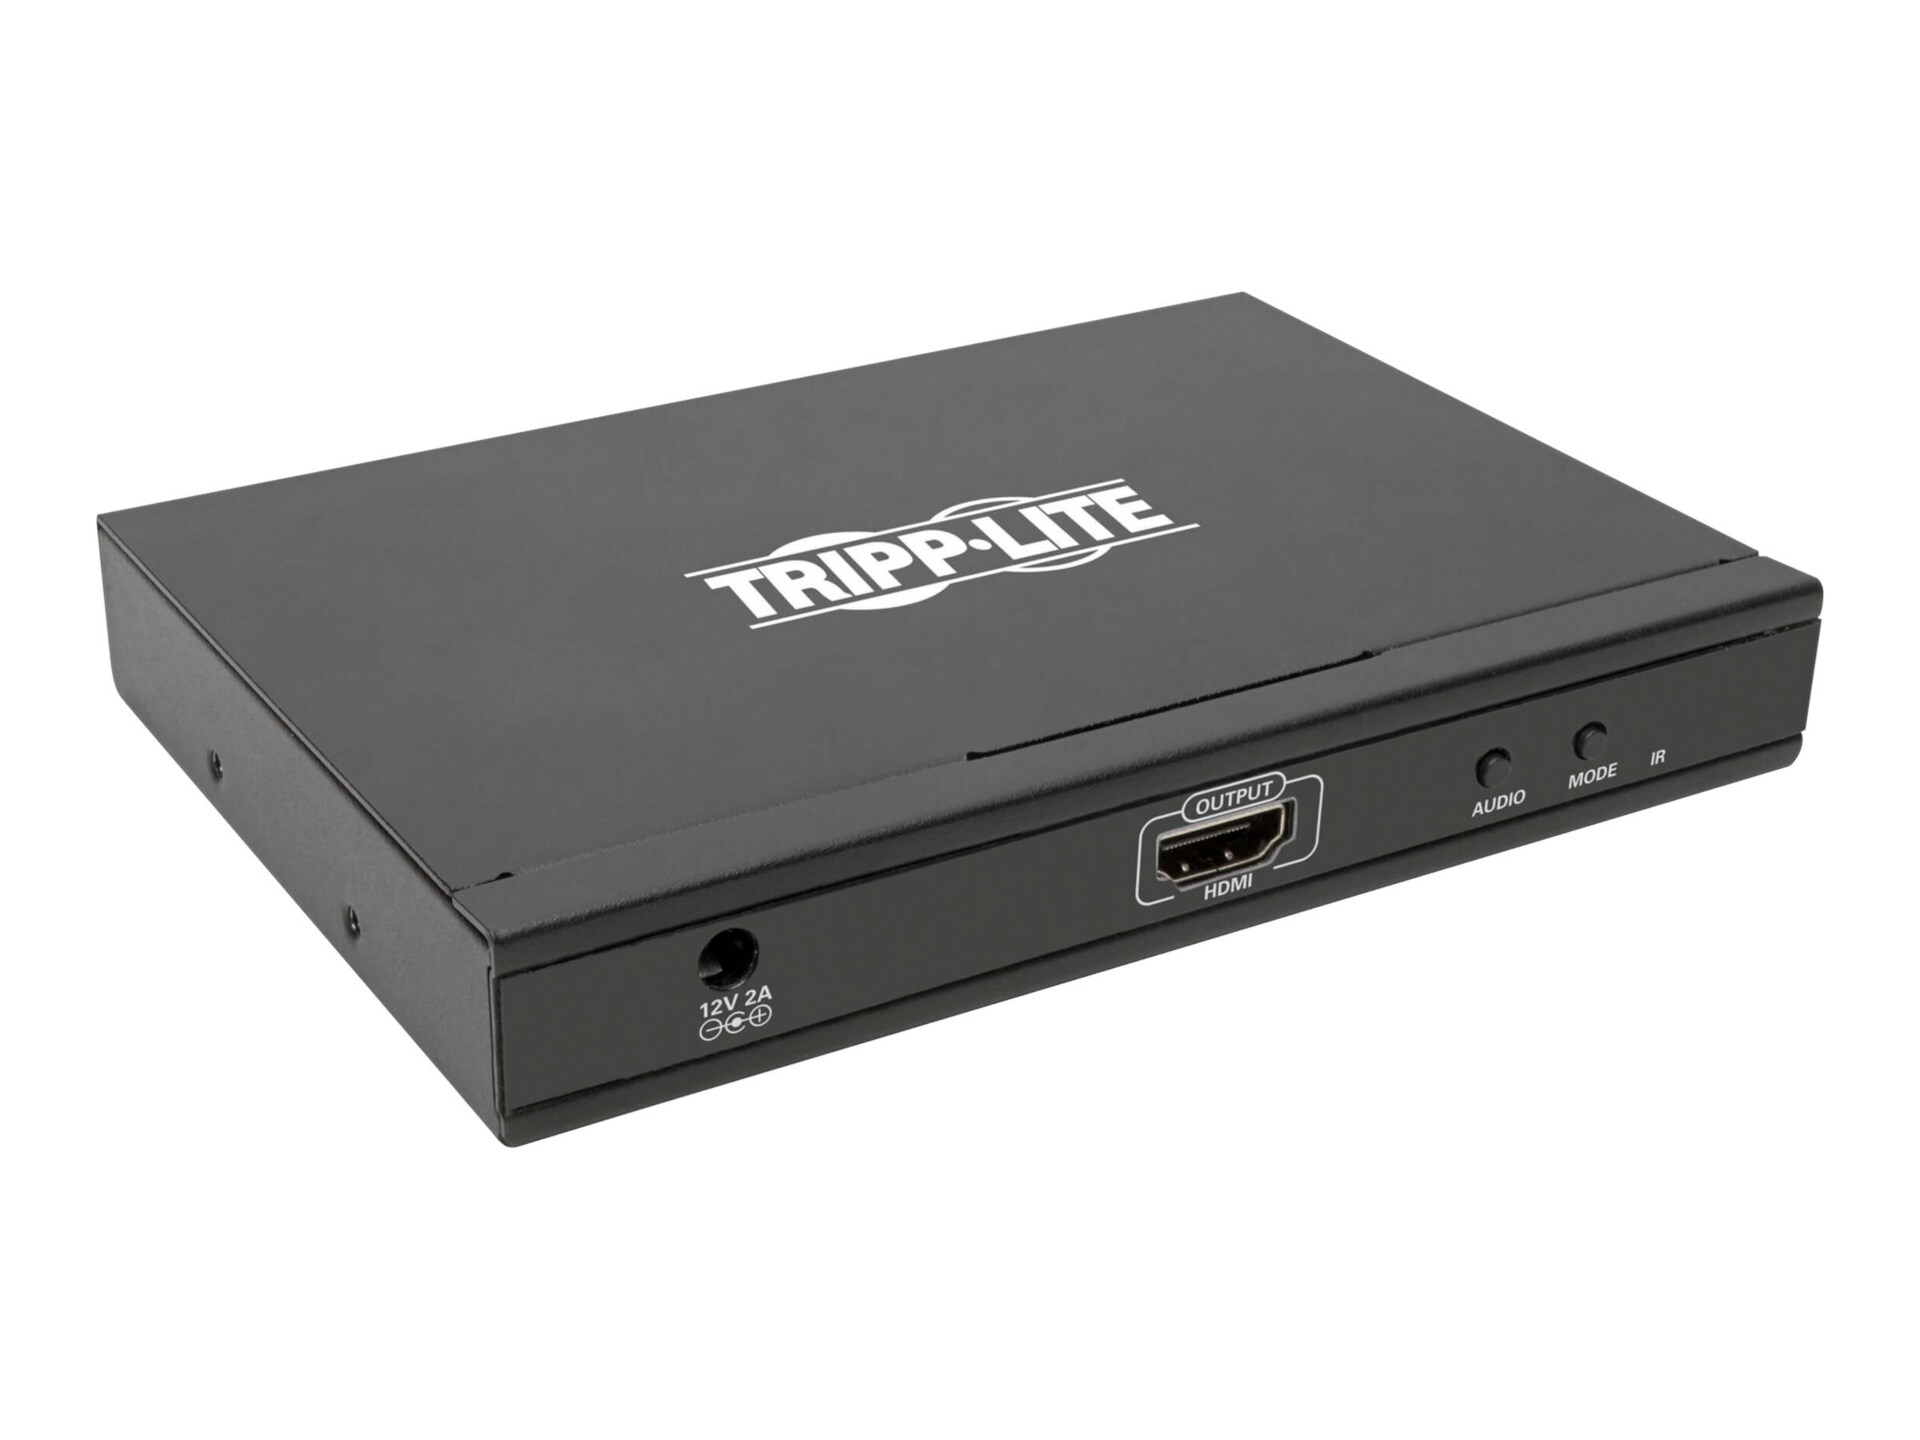 Tripp Lite HDMI Quad Multi-Viewer Switch 4-Port 1080p @ 60Hz w/ Built-in IR